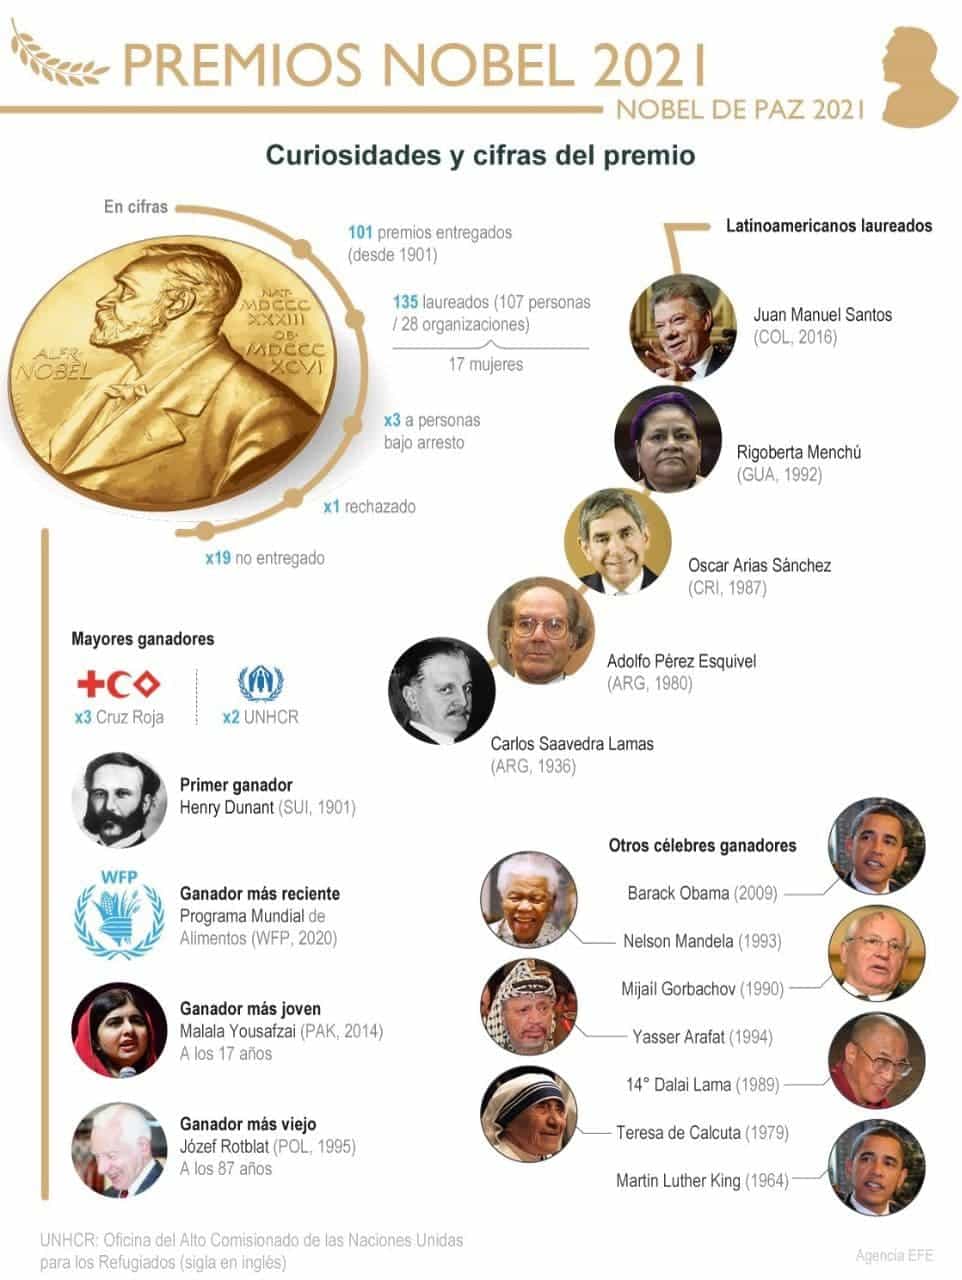 [Infografía] Las curiosidades y cifras del célebre Premio Nobel 1